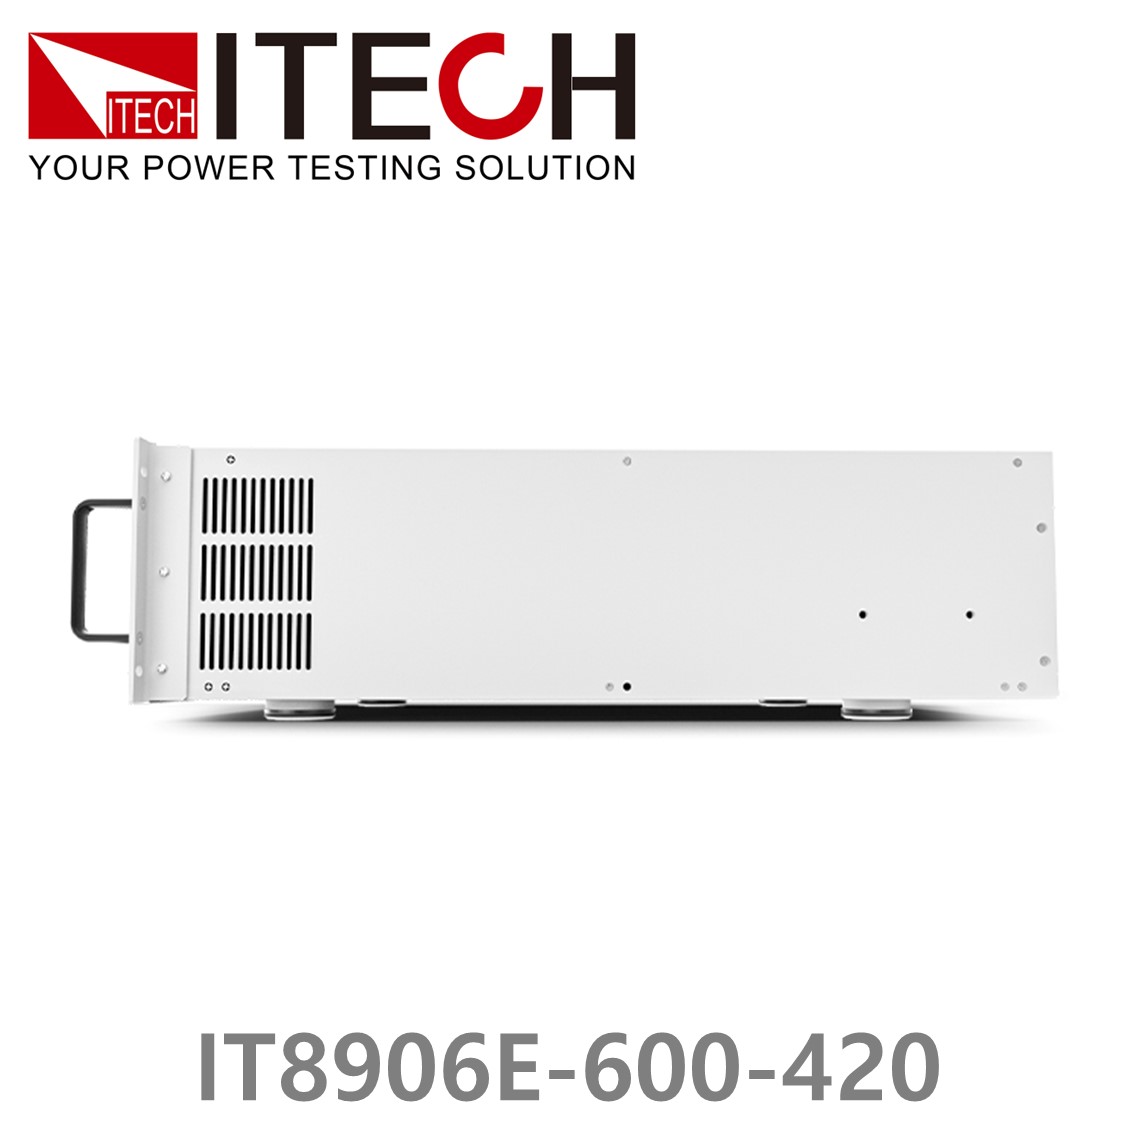 [ ITECH ] IT8906E-600-420  고성능 고전력 DC 전자로드 600V/420A/6kW (4U)